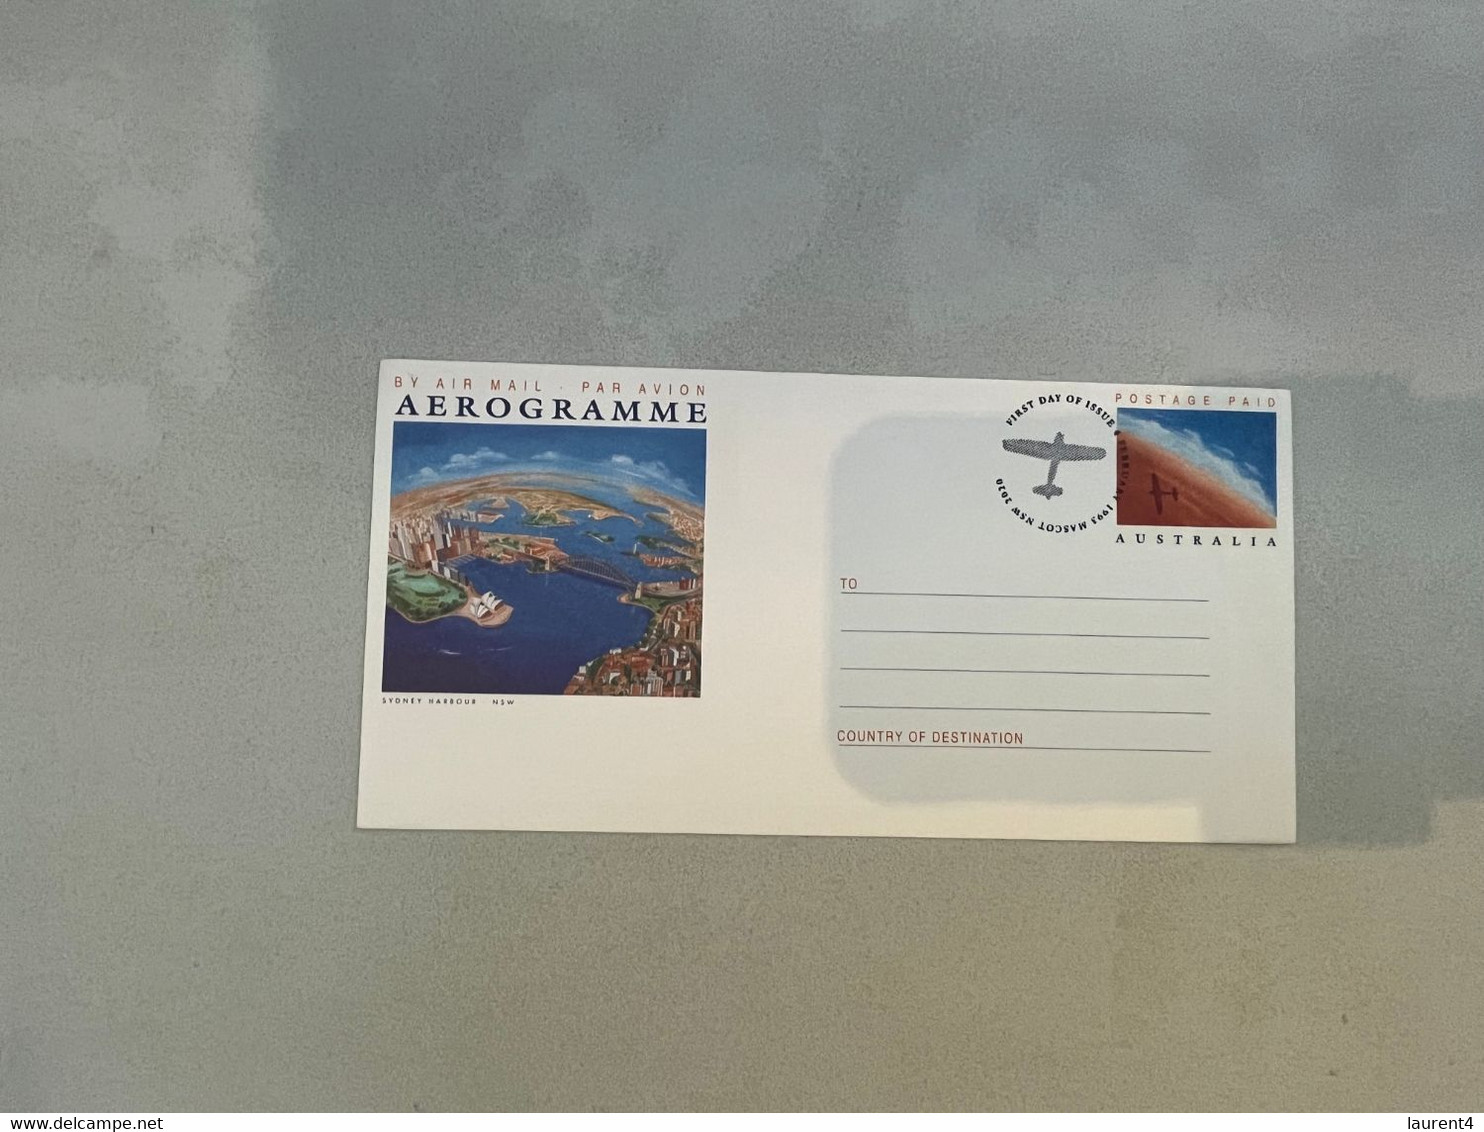 (4 N 4 A) Australia Aerogramme - (5) Aviation - 1993 (set Of 5) - Aérogrammes